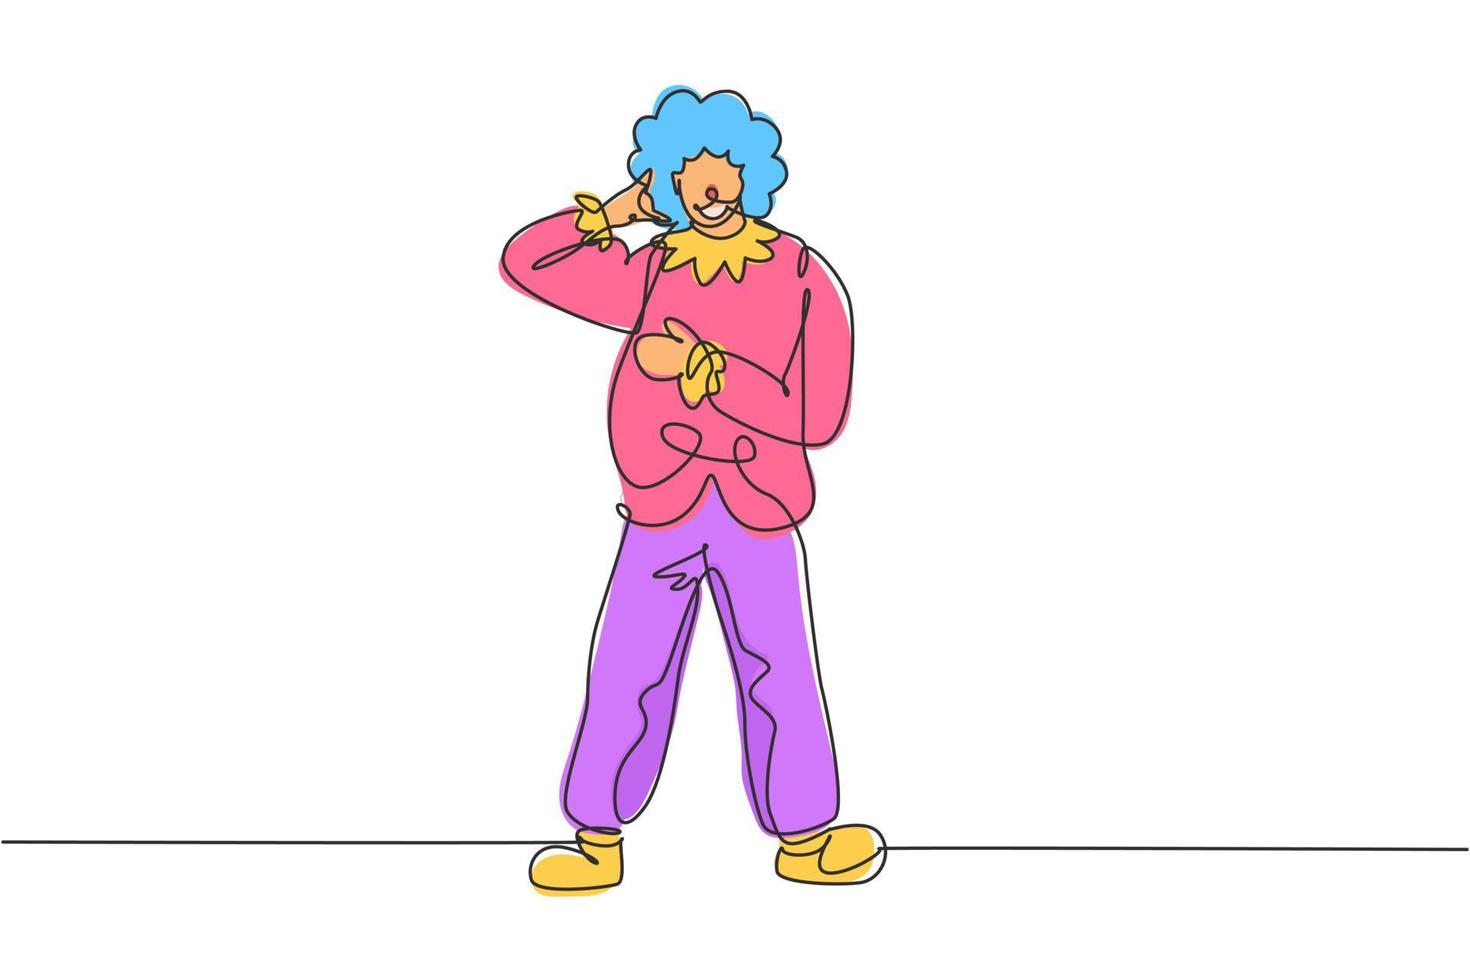 singolo disegno di una linea clown in piedi con gesto di chiamata che indossa parrucca e costume da clown pronto a intrattenere il pubblico nell'arena del circo. illustrazione vettoriale grafica di disegno di disegno di linea continua moderna